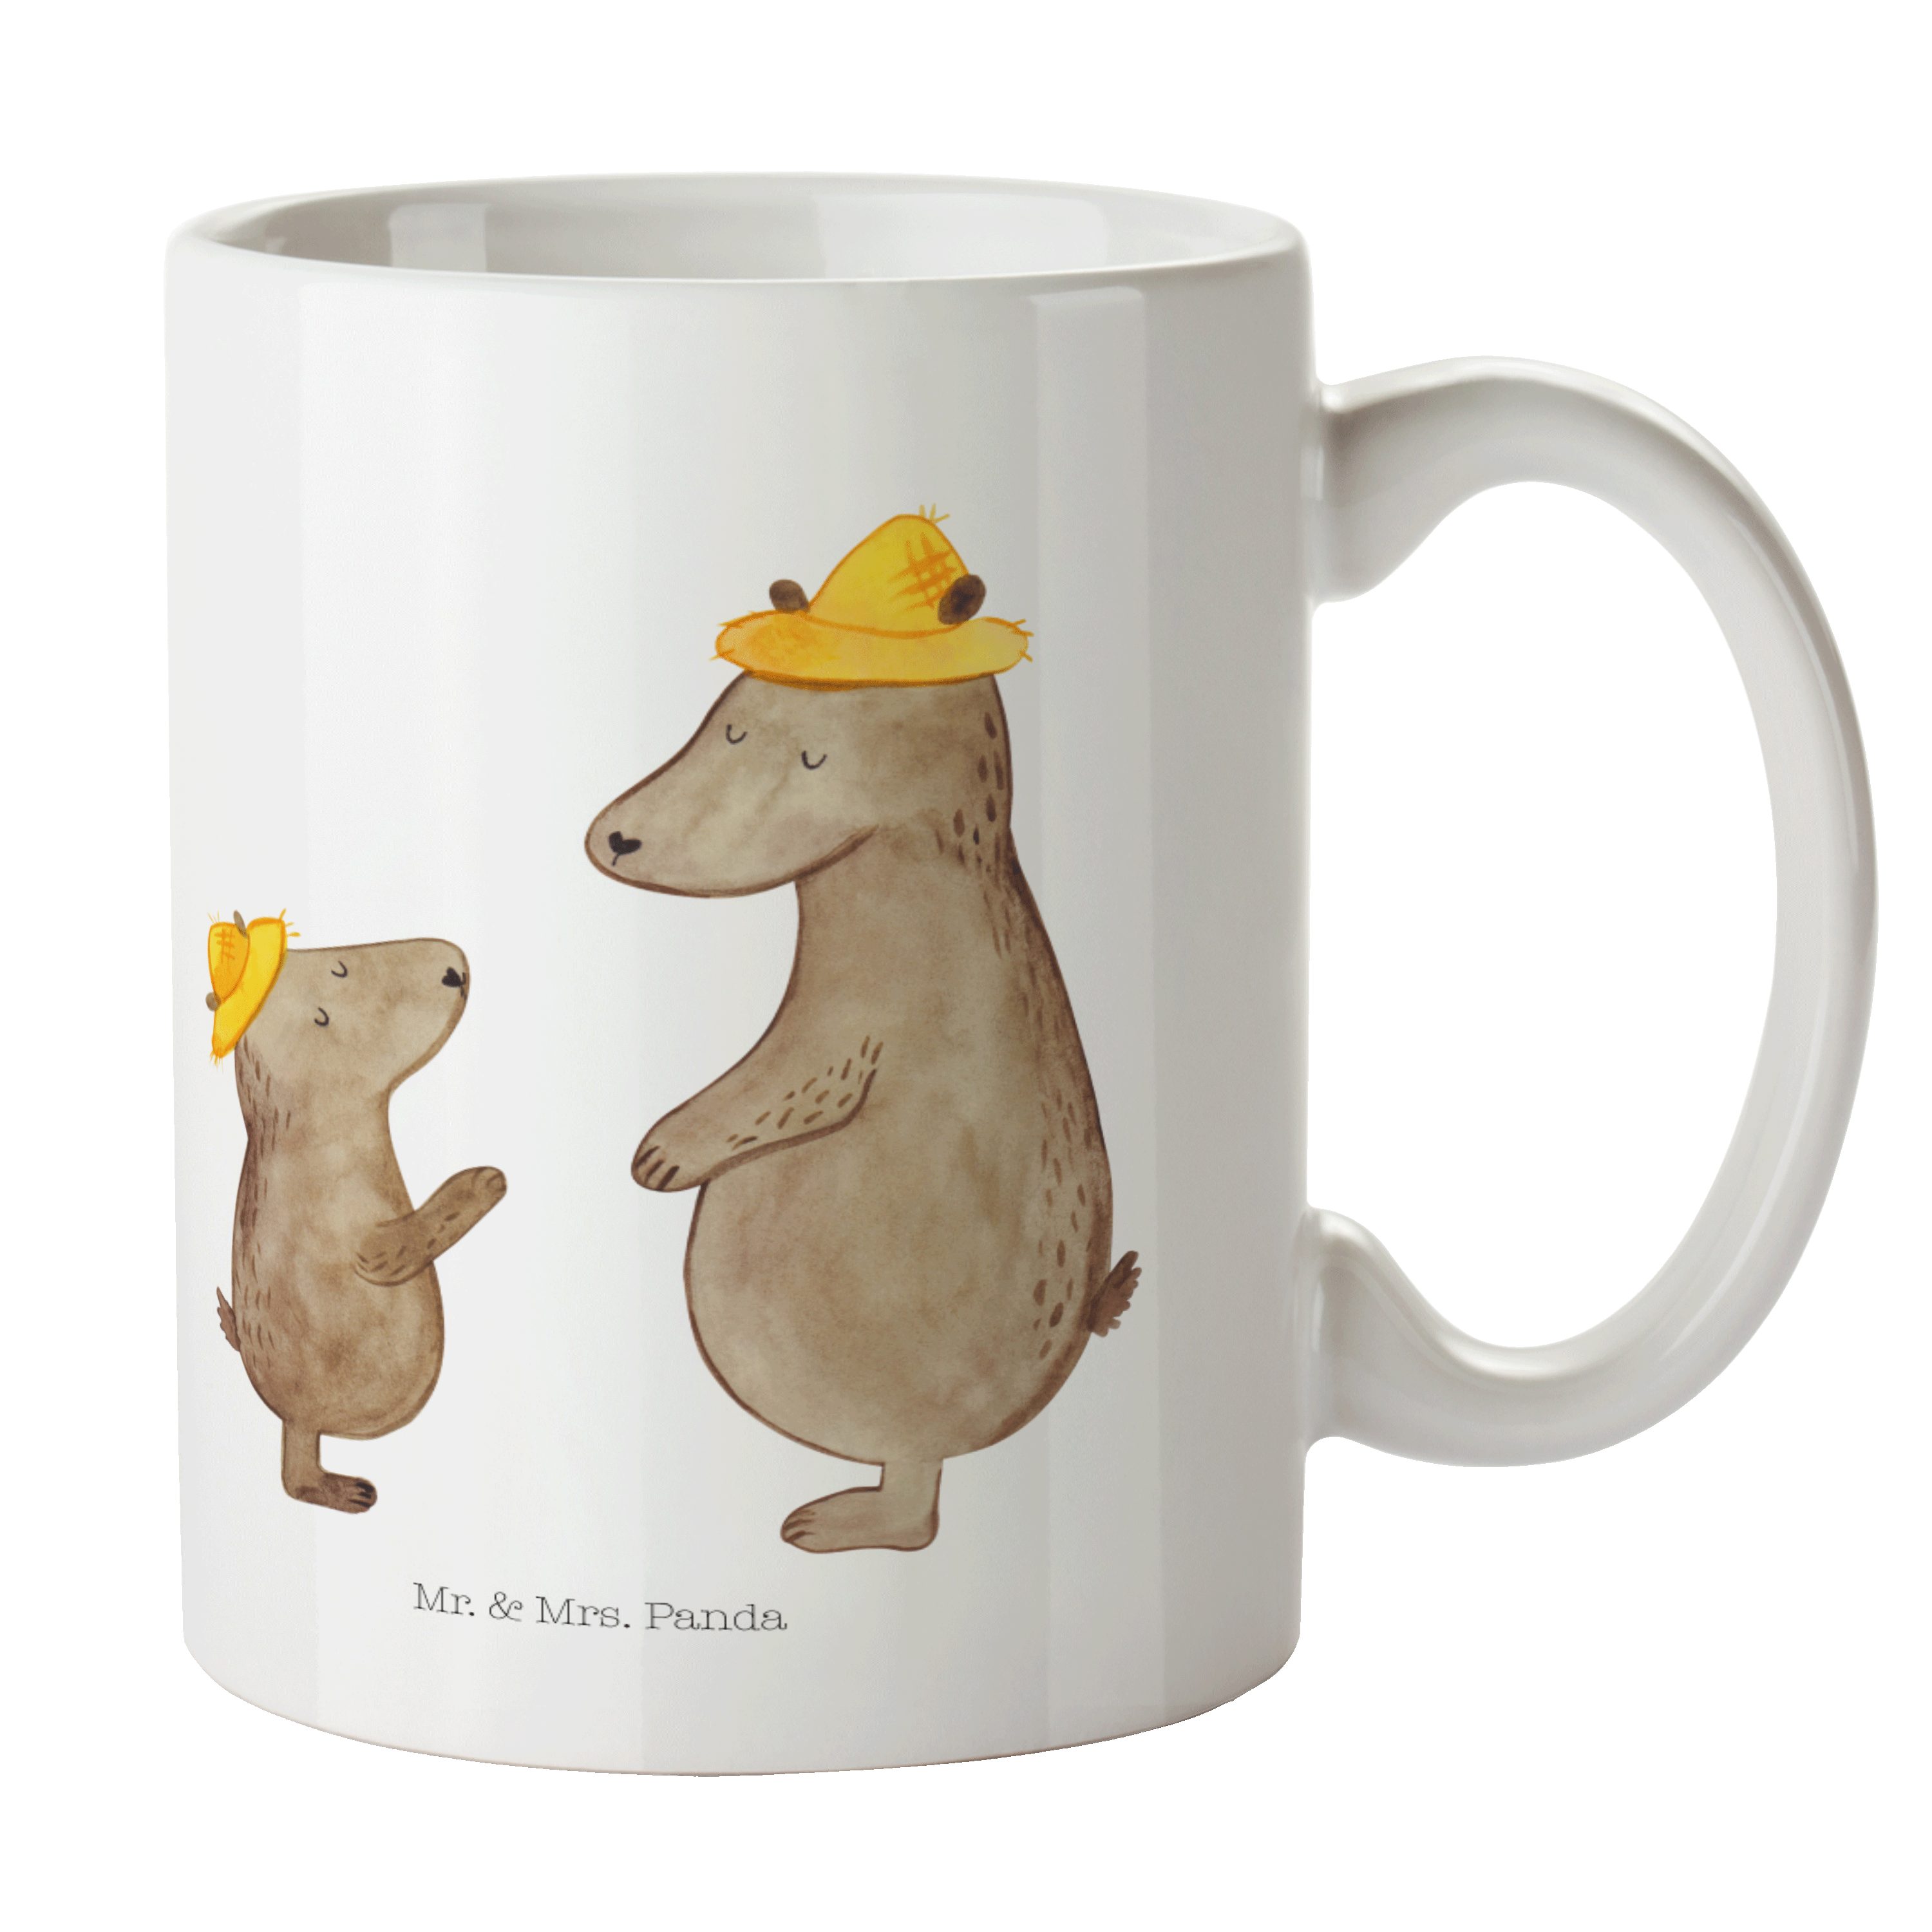 Mr. & Mrs. Panda Tasse Bären mit Hut - Weiß - Geschenk, Geschenk Tasse, Bruder, Familie, Vat, Keramik